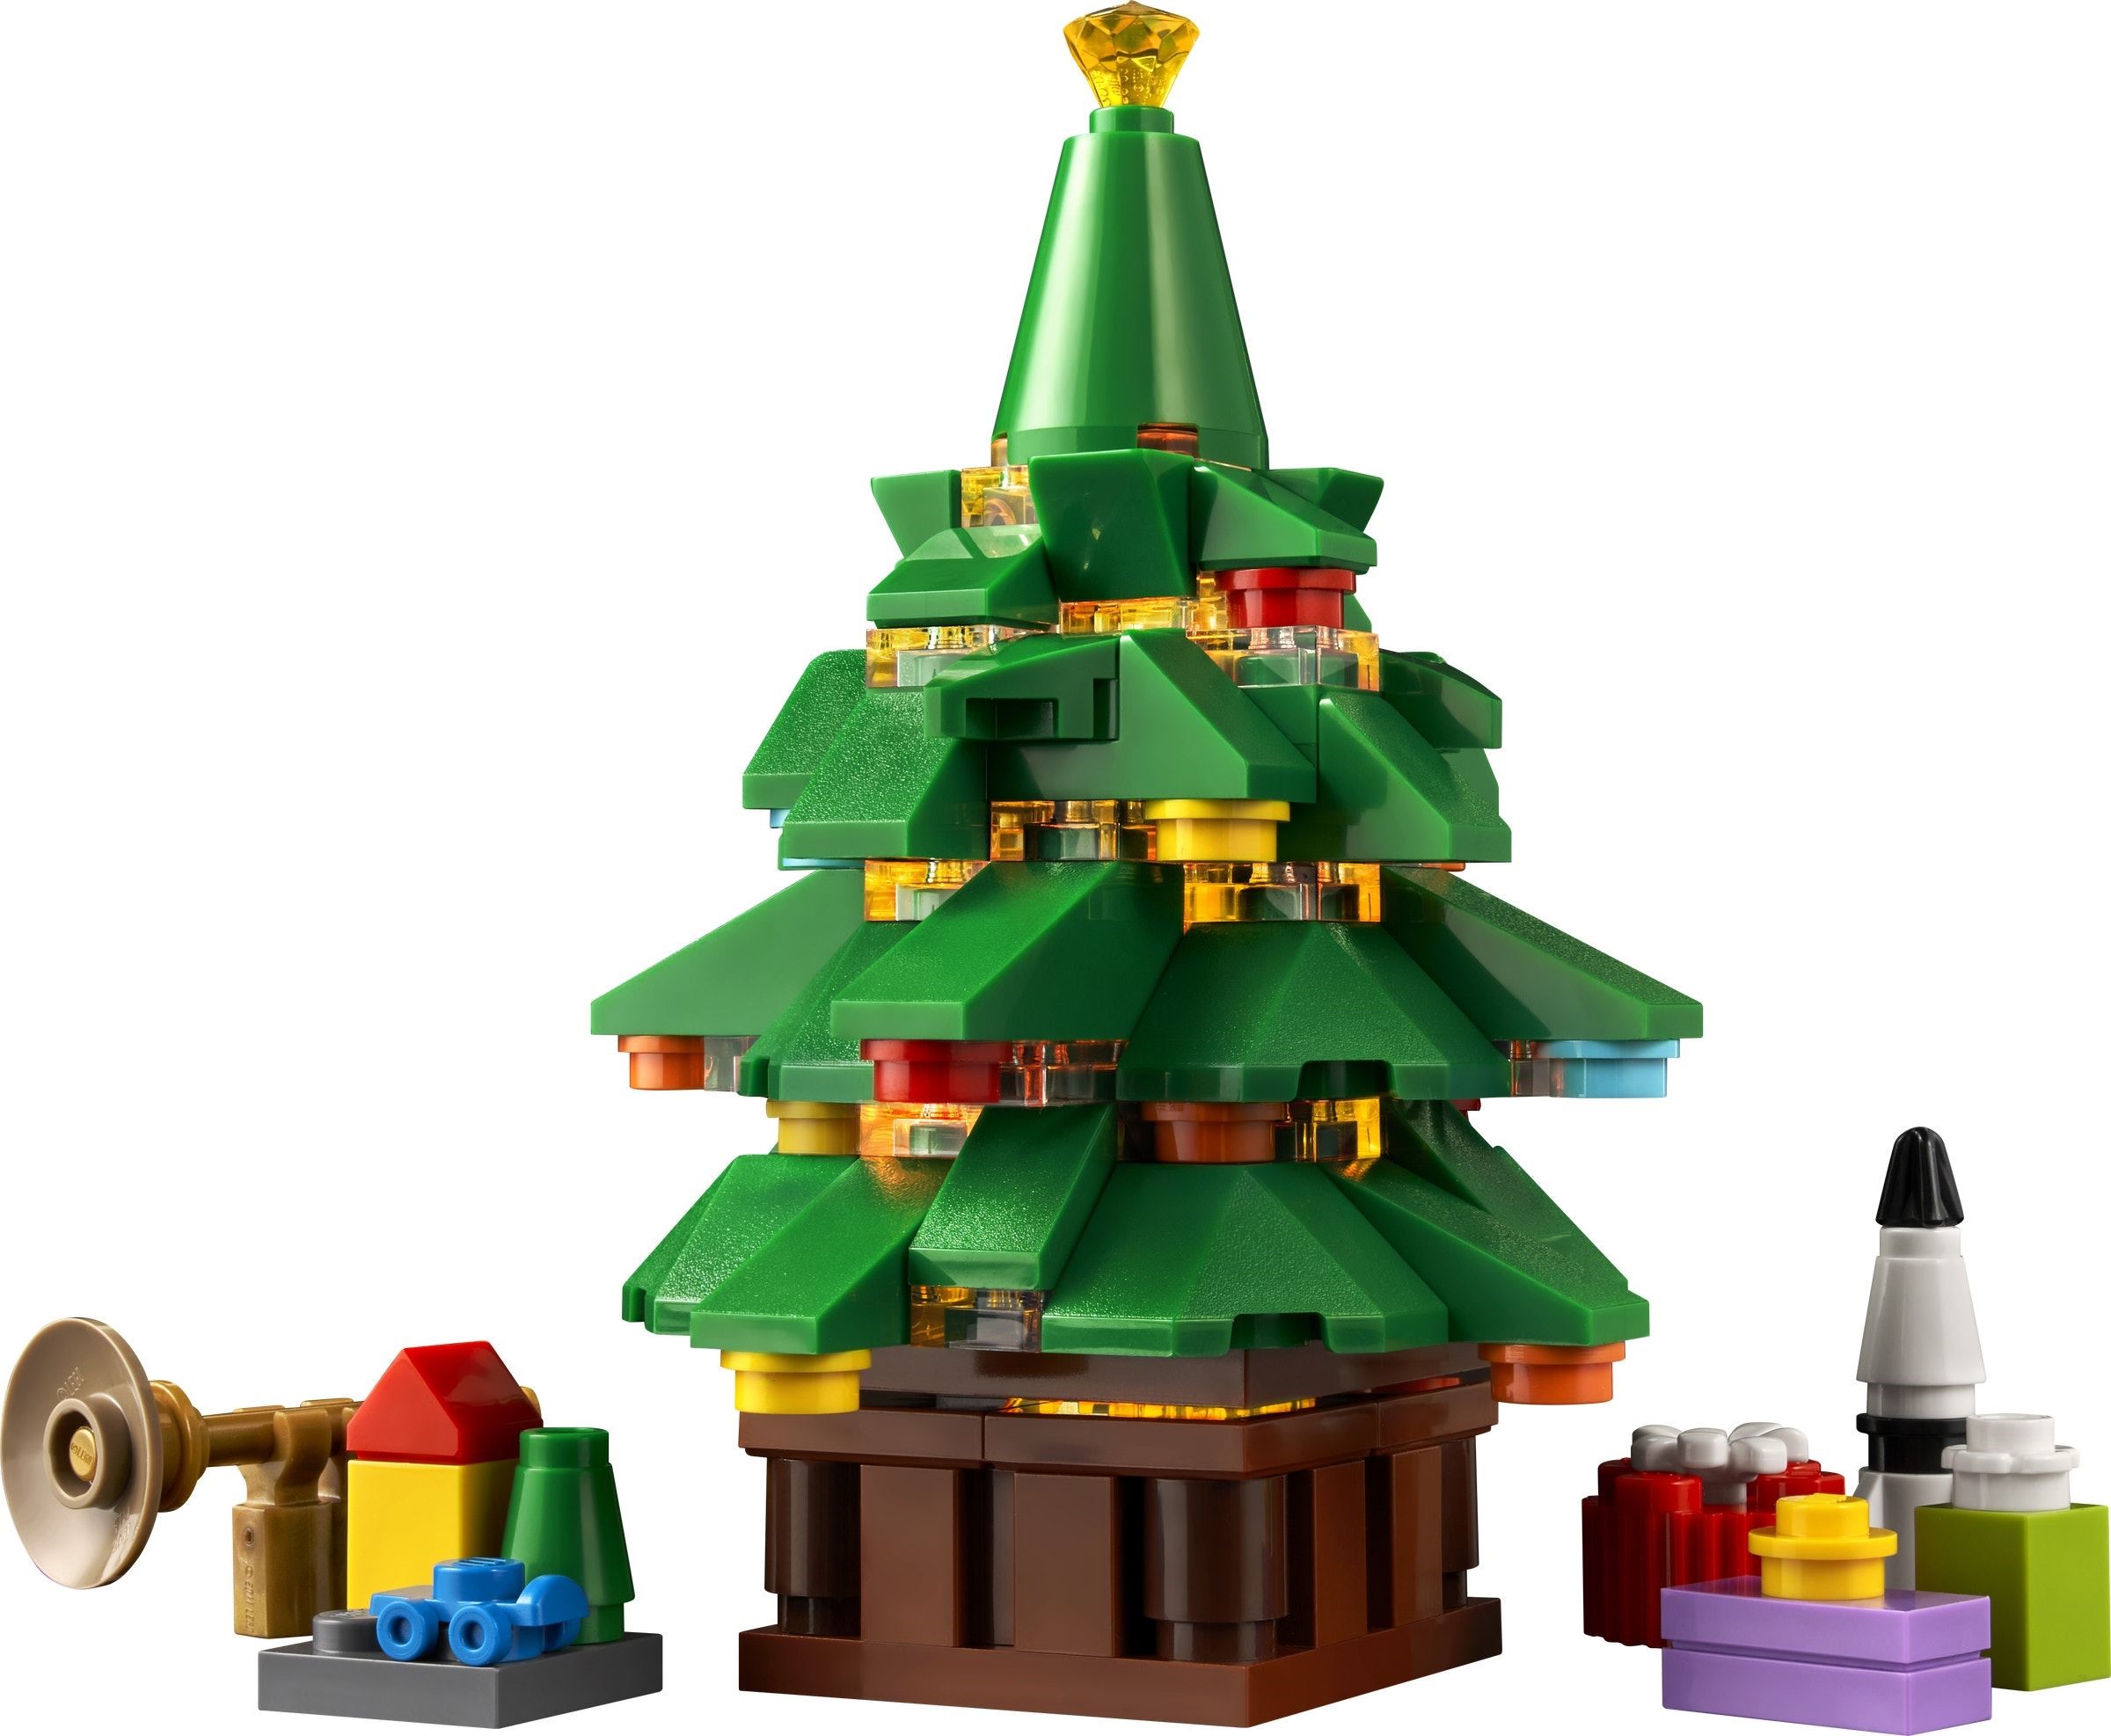 LEGO-Winter-Village-Santas-Visit-10293-7.jpg